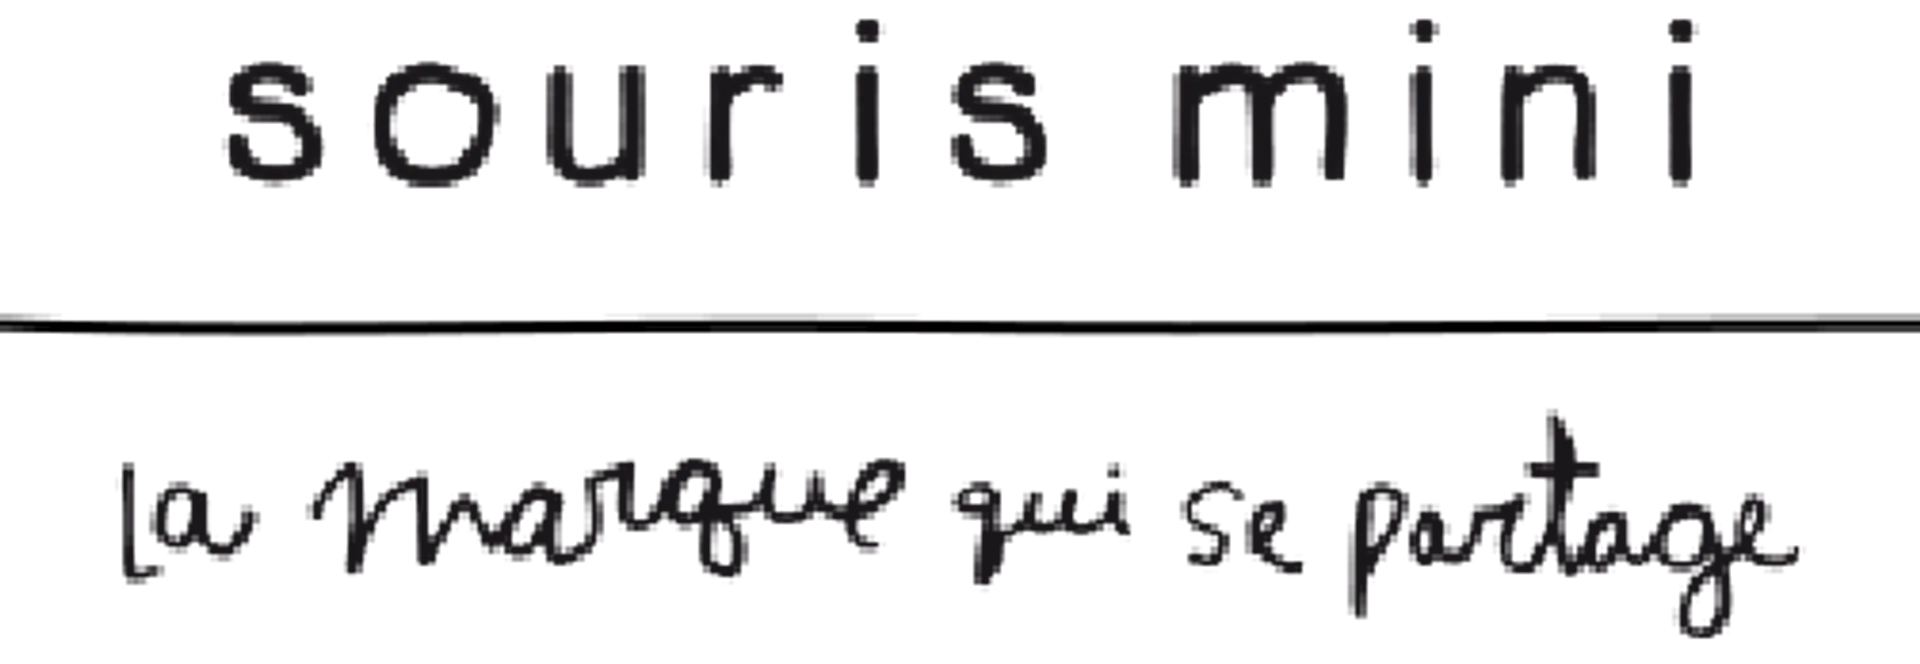 SOURIS MINI logo de circulaires